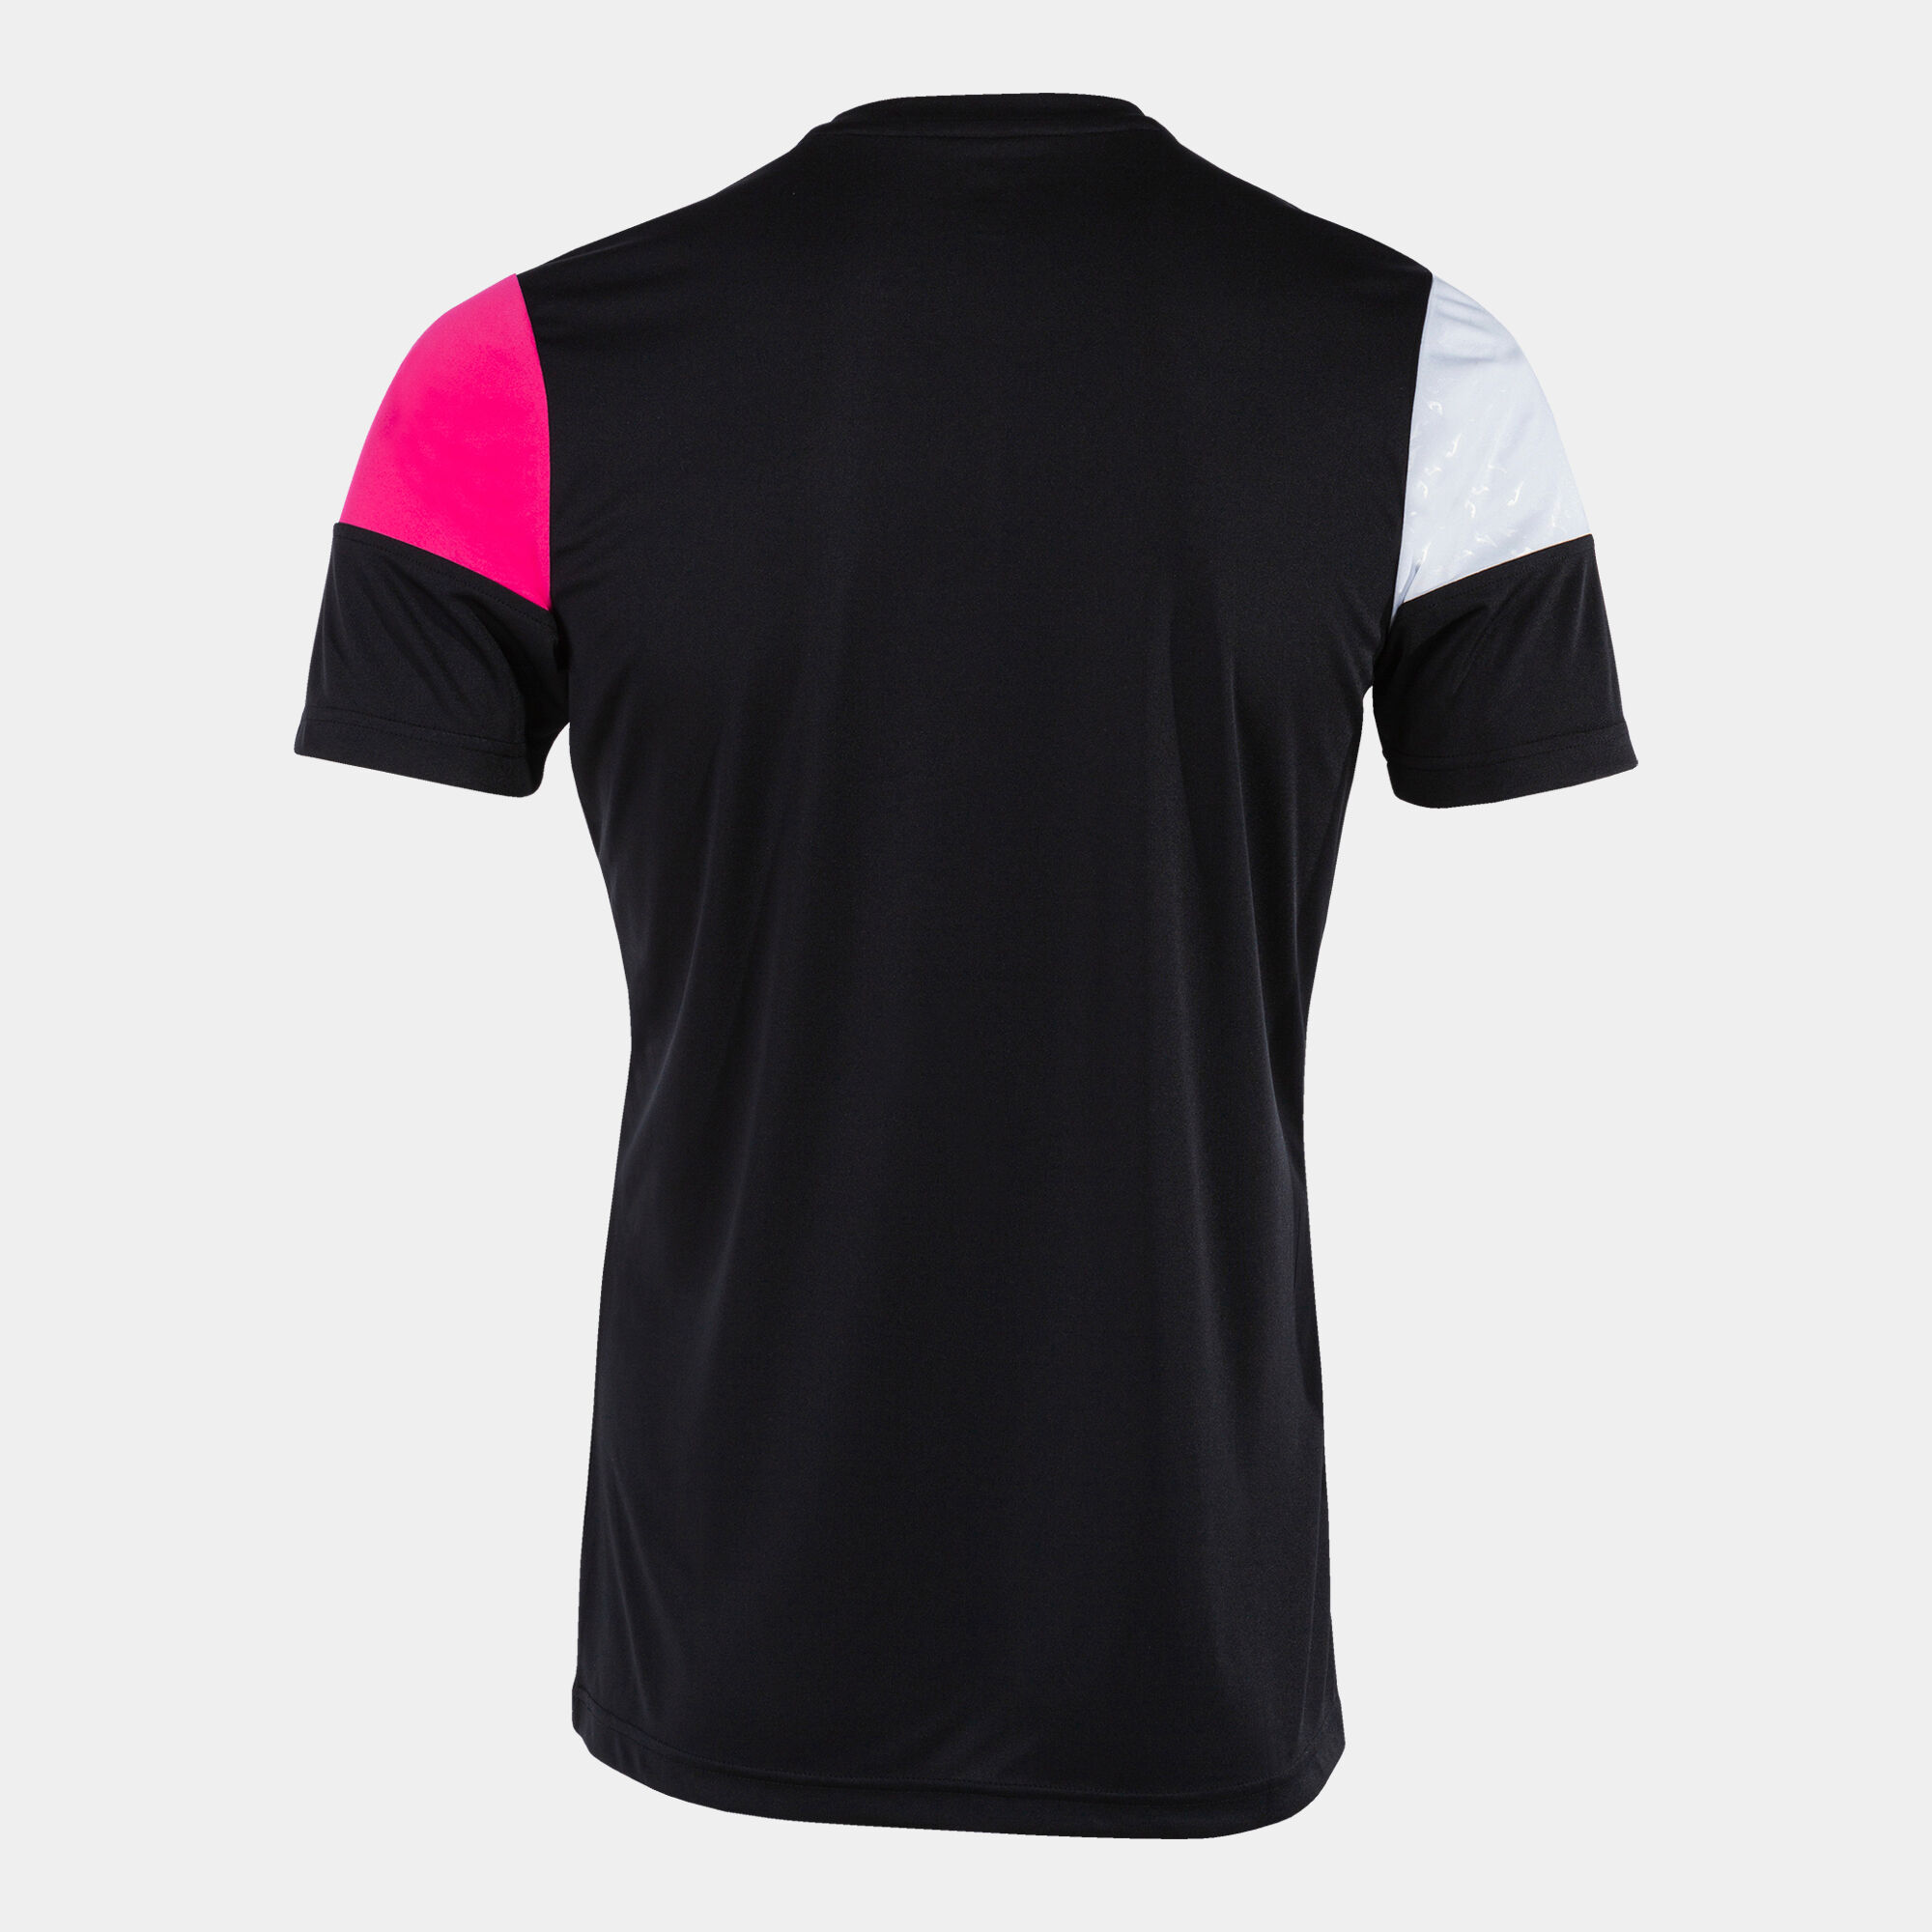 Camiseta manga corta hombre Crew V negro rosa